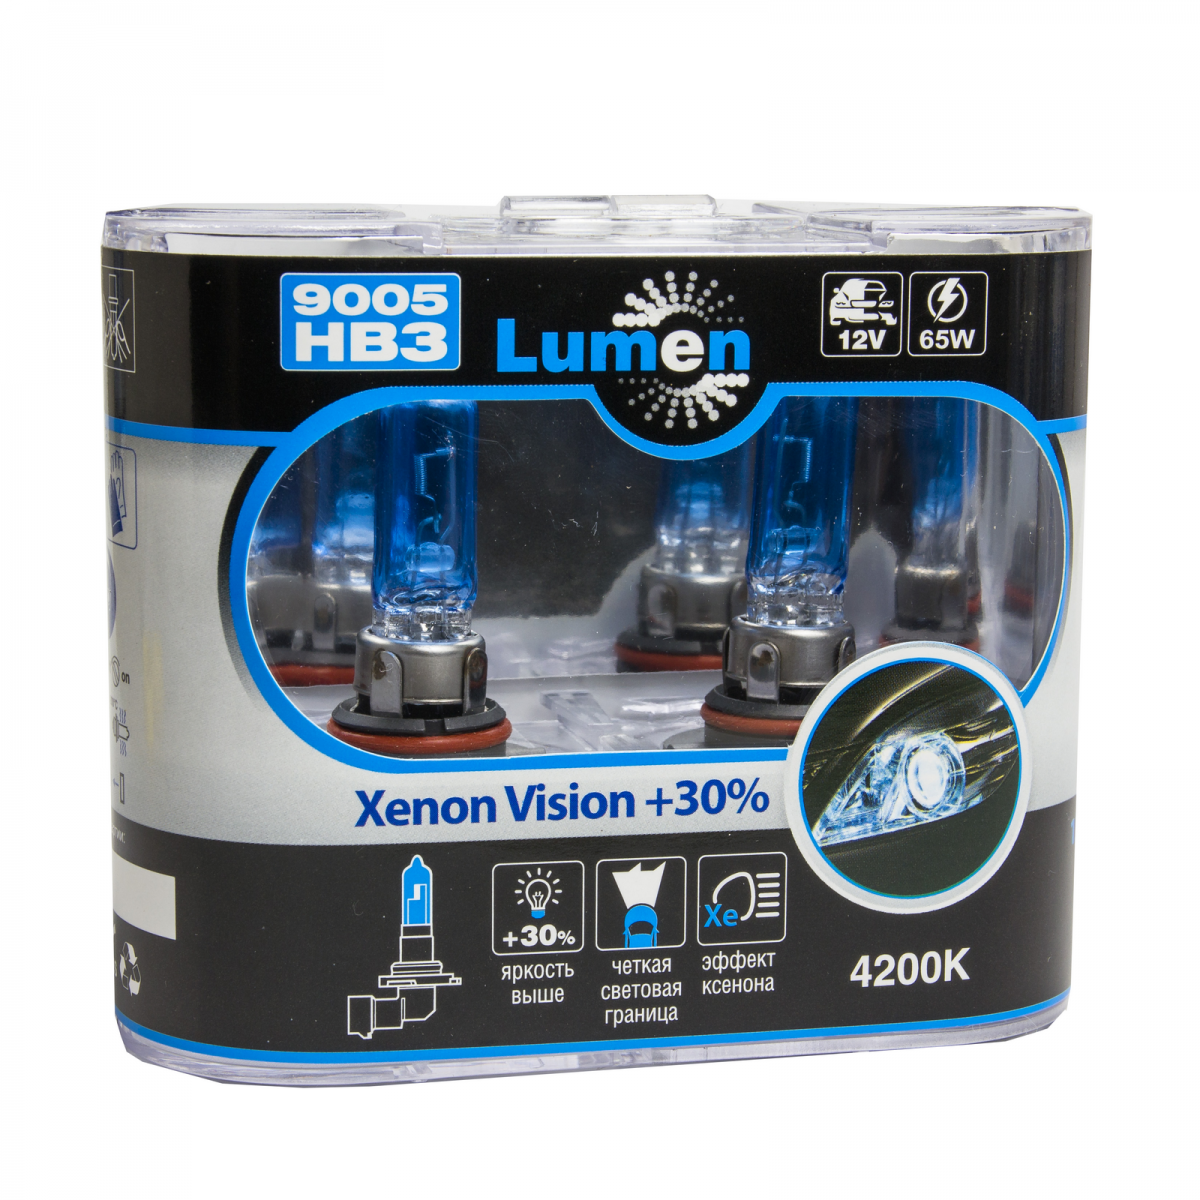 Xenon vision. Clearlight Vision Plus hb3. Лампы hb3 белый свет повышенной яркости. Лампы hb3 под ксенон. Clearlight Vision Plus hb4.